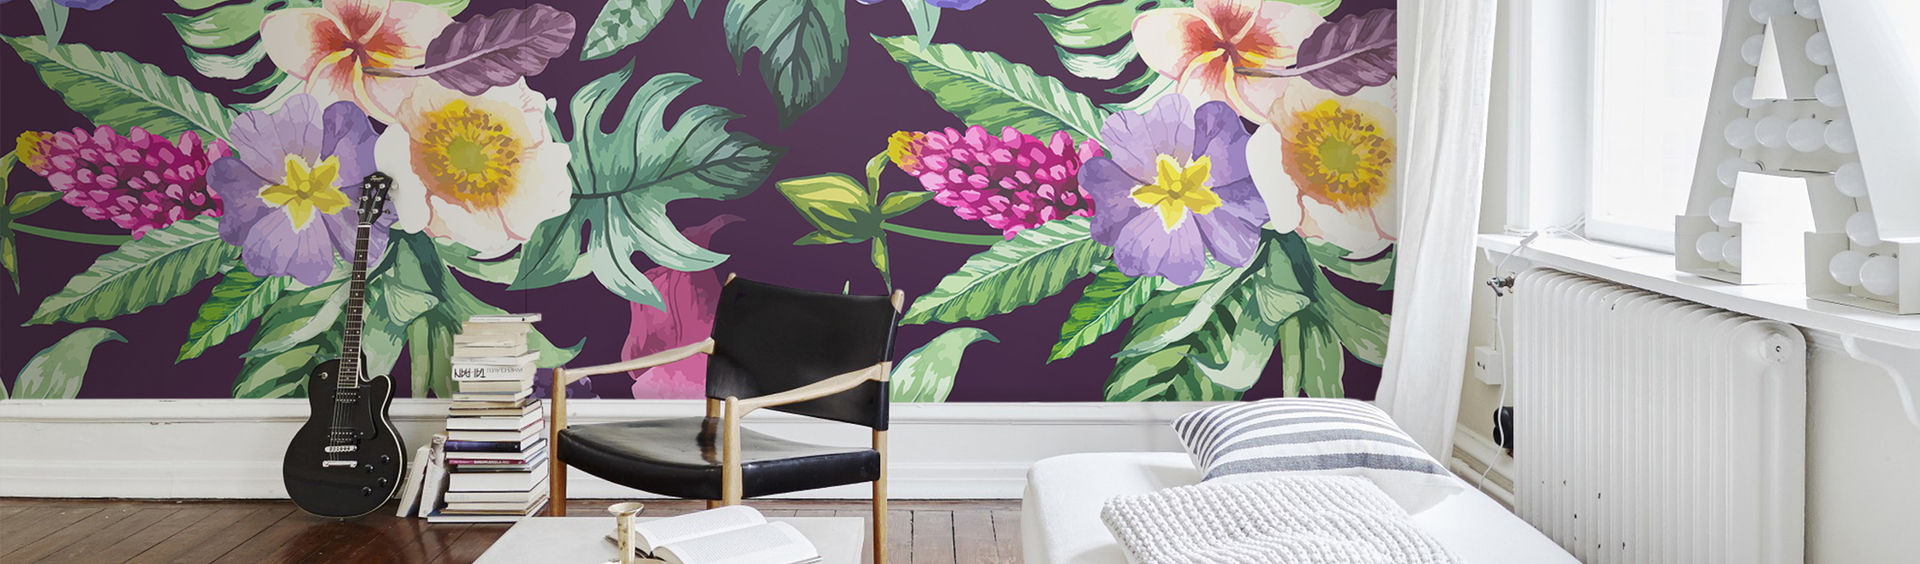 Purple Flowers Pixers Tropical style bedroom wall mural,wallpaper,flowers,tropical,leaves